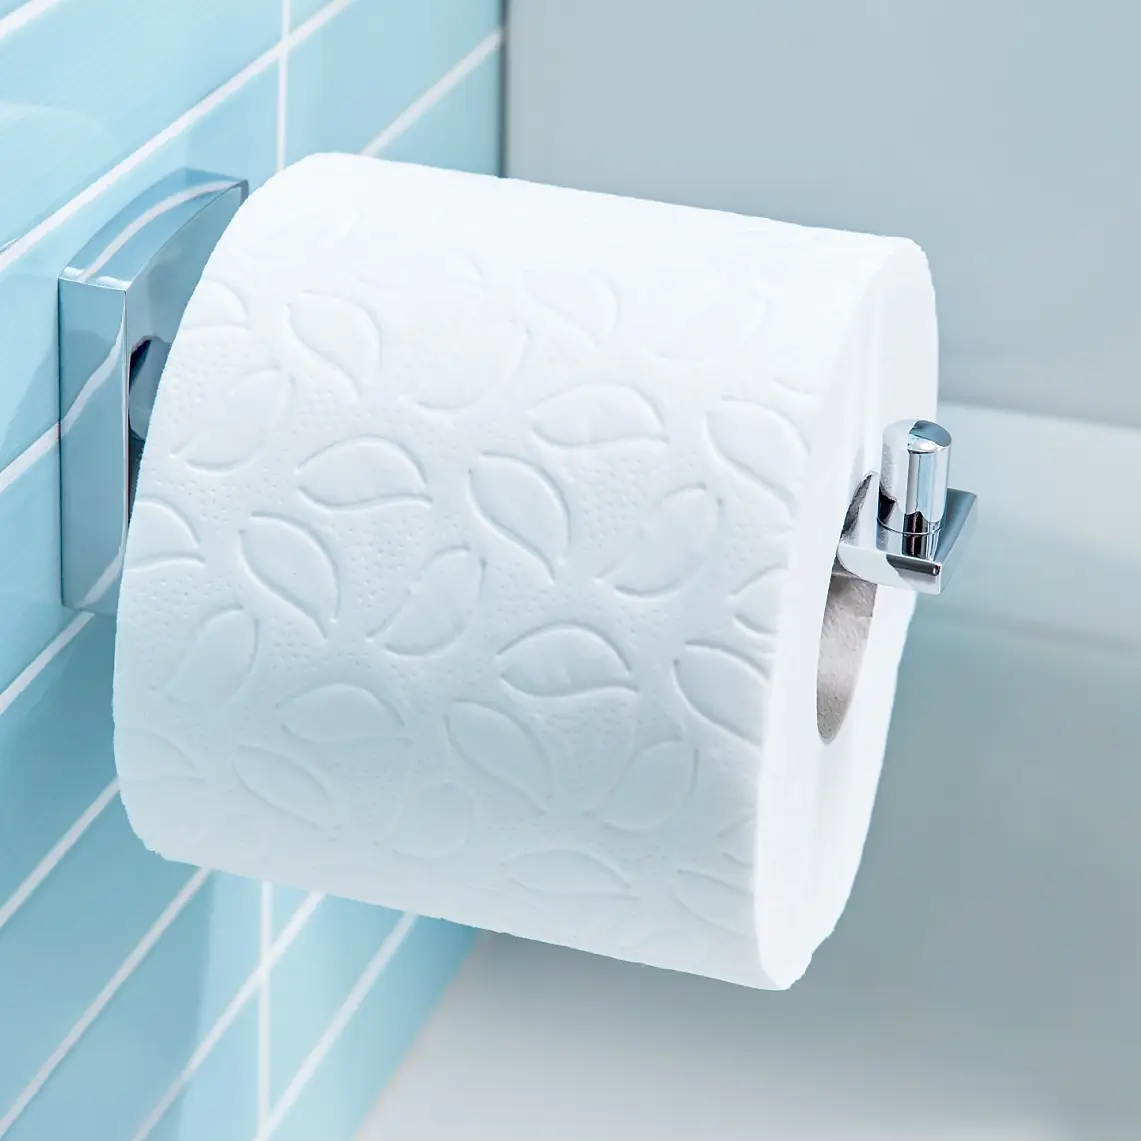 Design semplici per tenere a portata di mano le bobine di carta igienica.